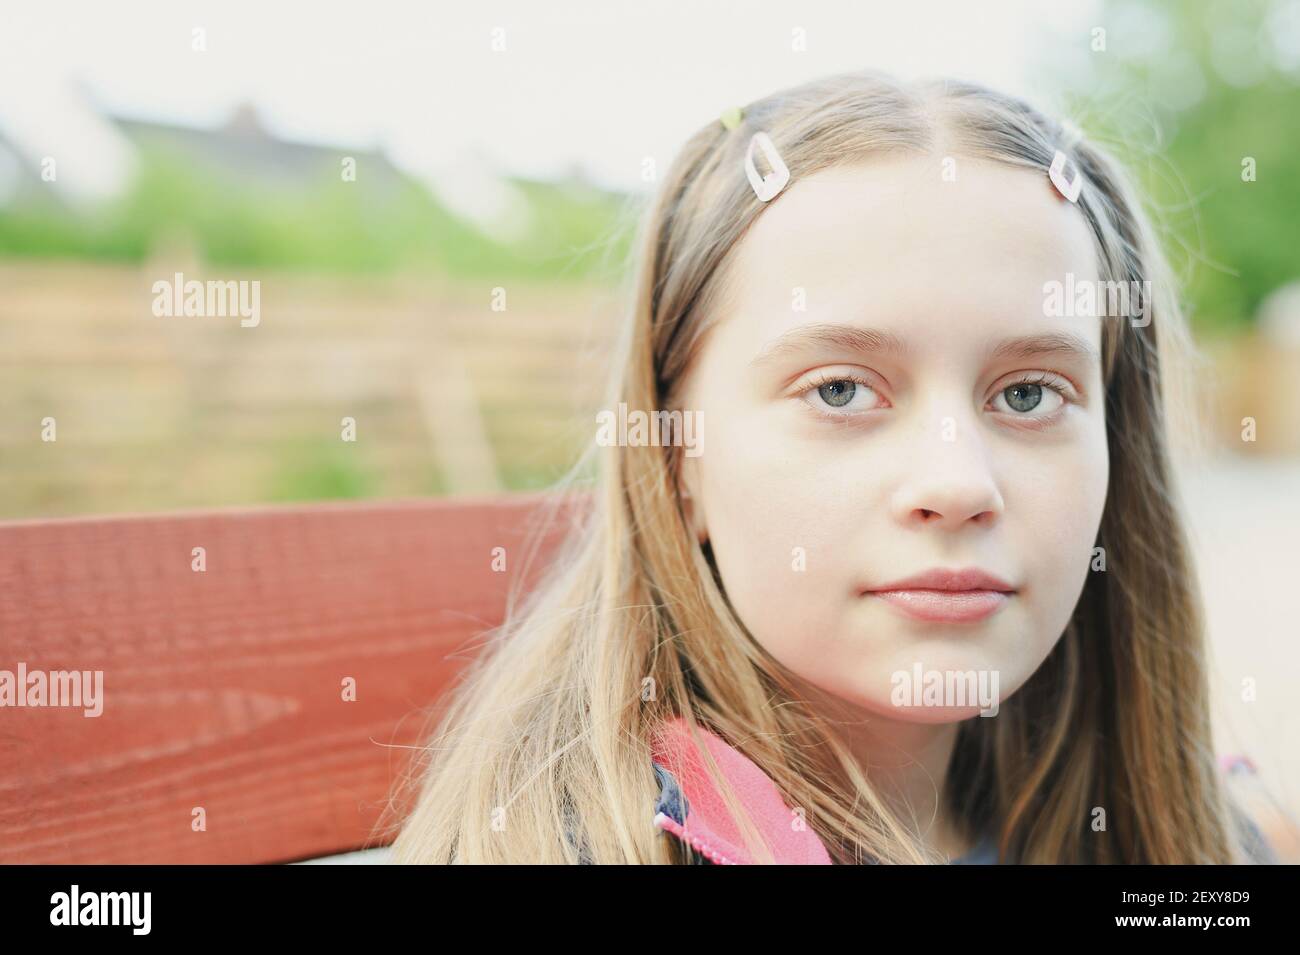 Ritratto di cute ragazza adolescente capelli biondi guardando la macchina fotografica, primo piano con sfondo sfocato Foto Stock